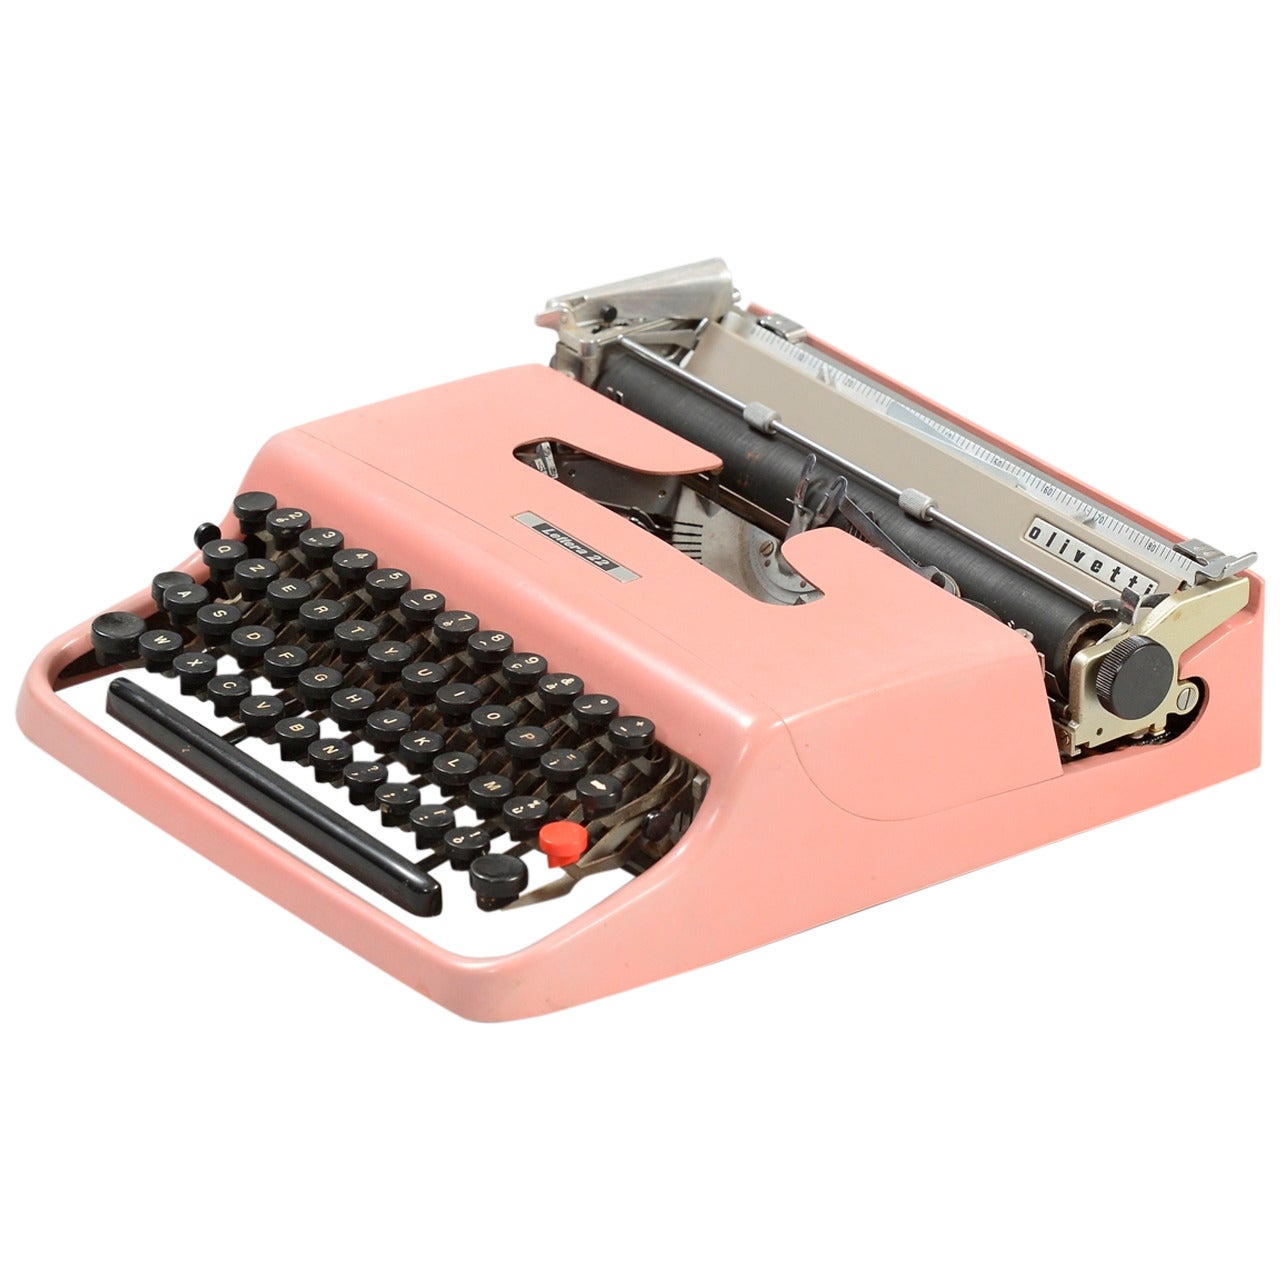 Marcello Nizzoli "Lettera 22" Typewriter